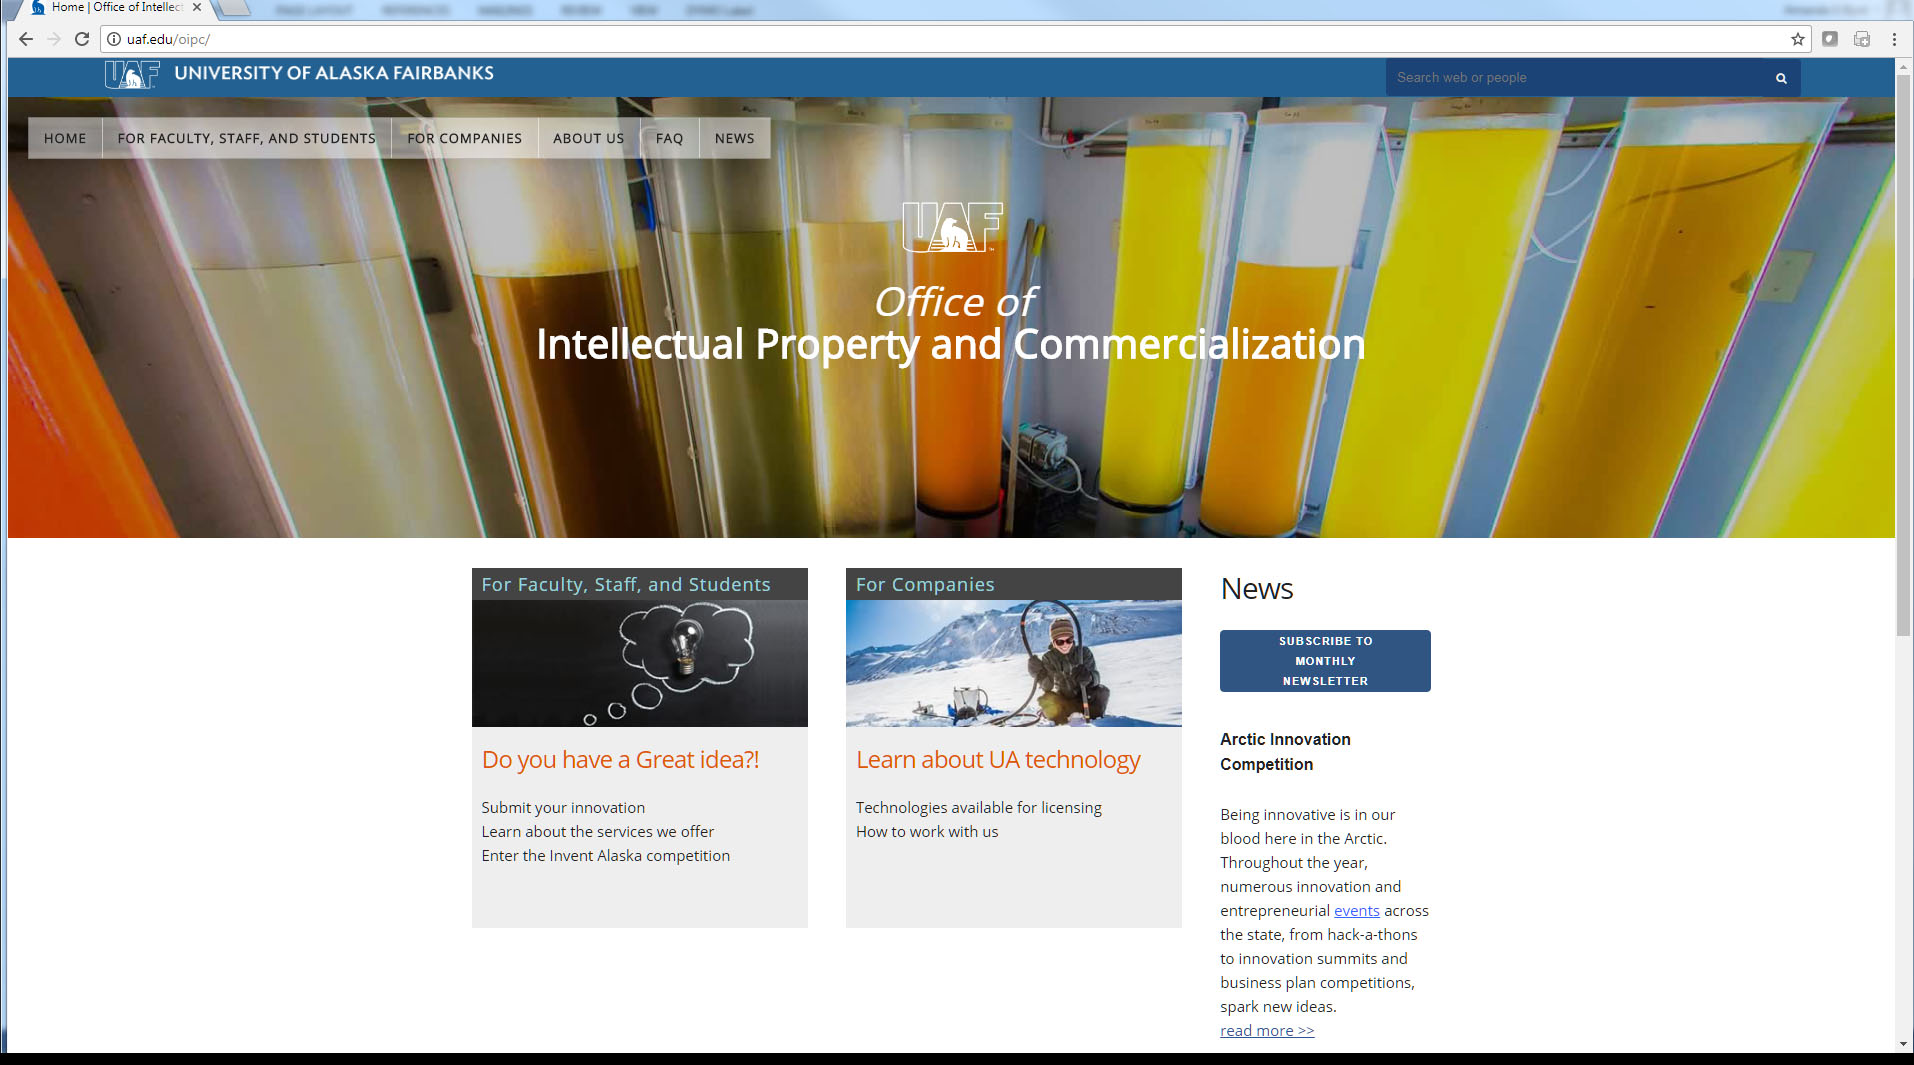 OIPC website image